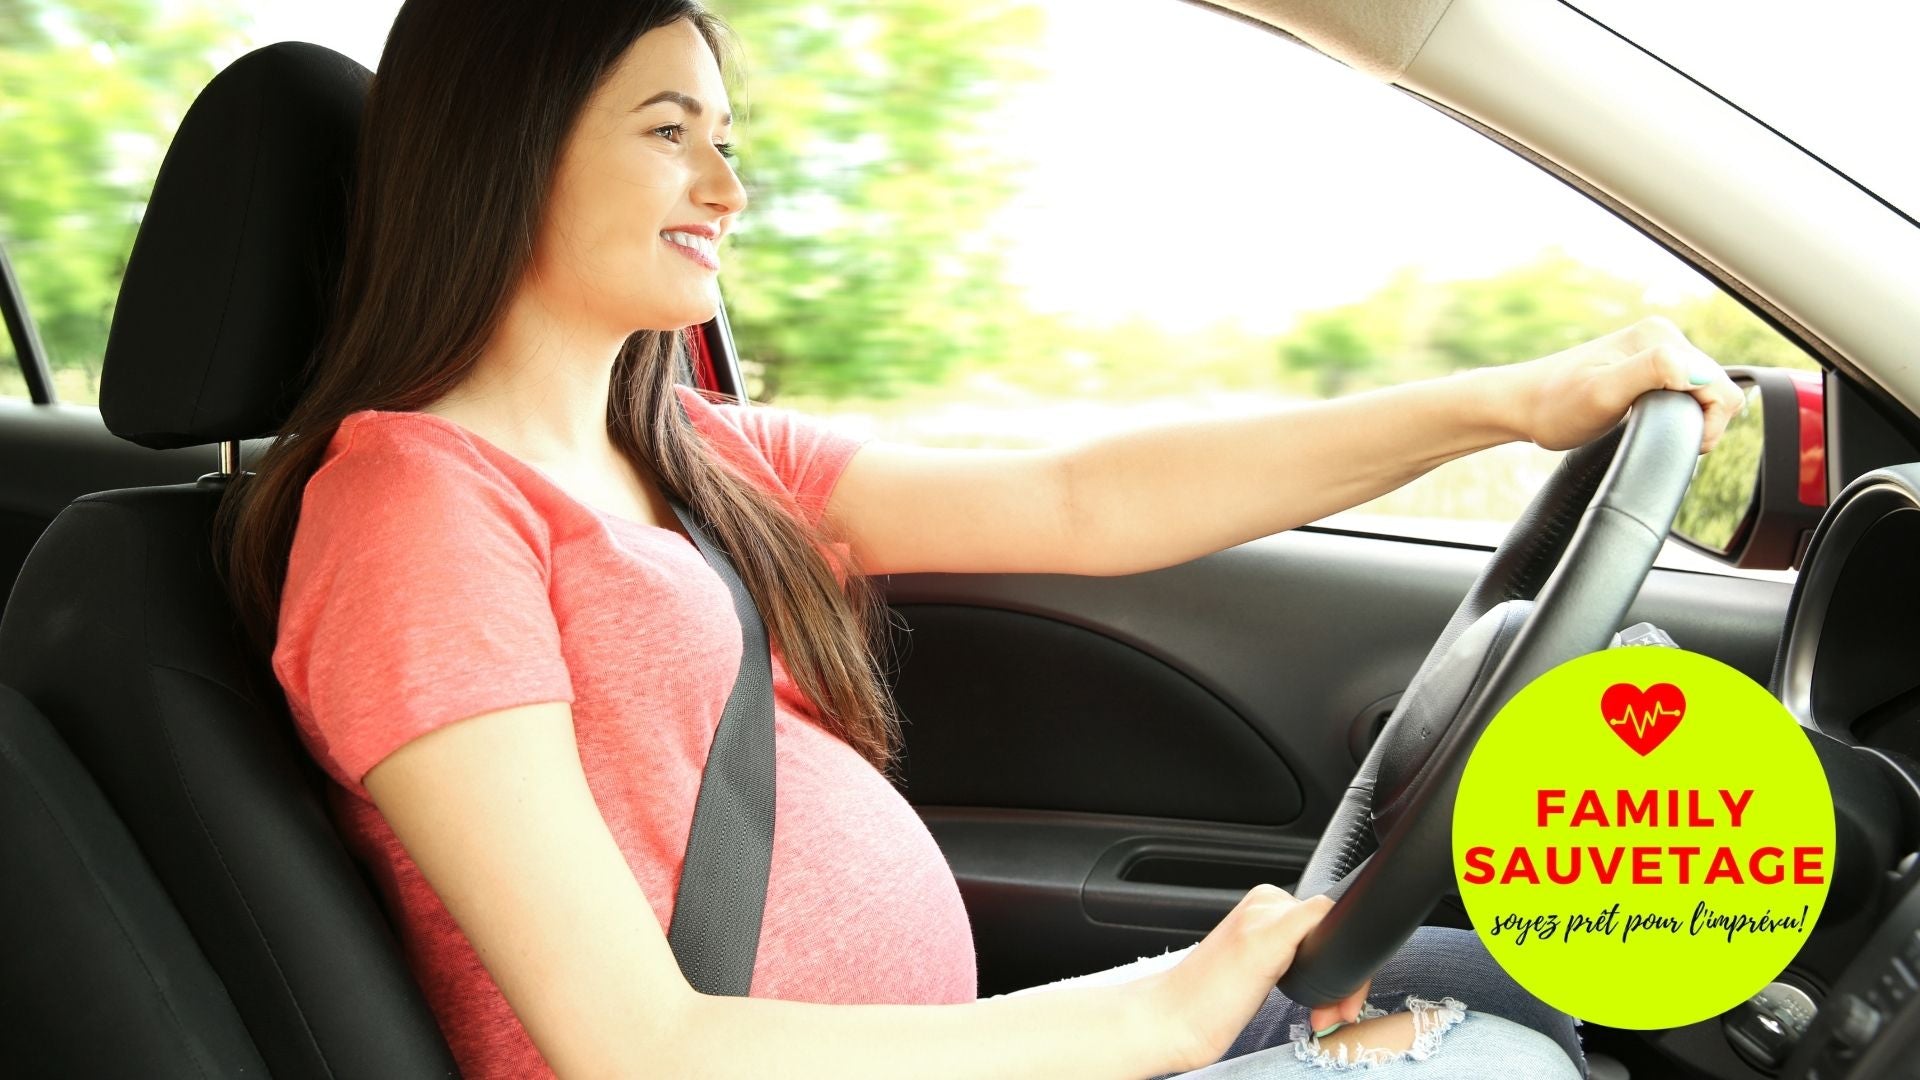 Ceinture de maternité de voiture - Femme enceinte - Protégez votre